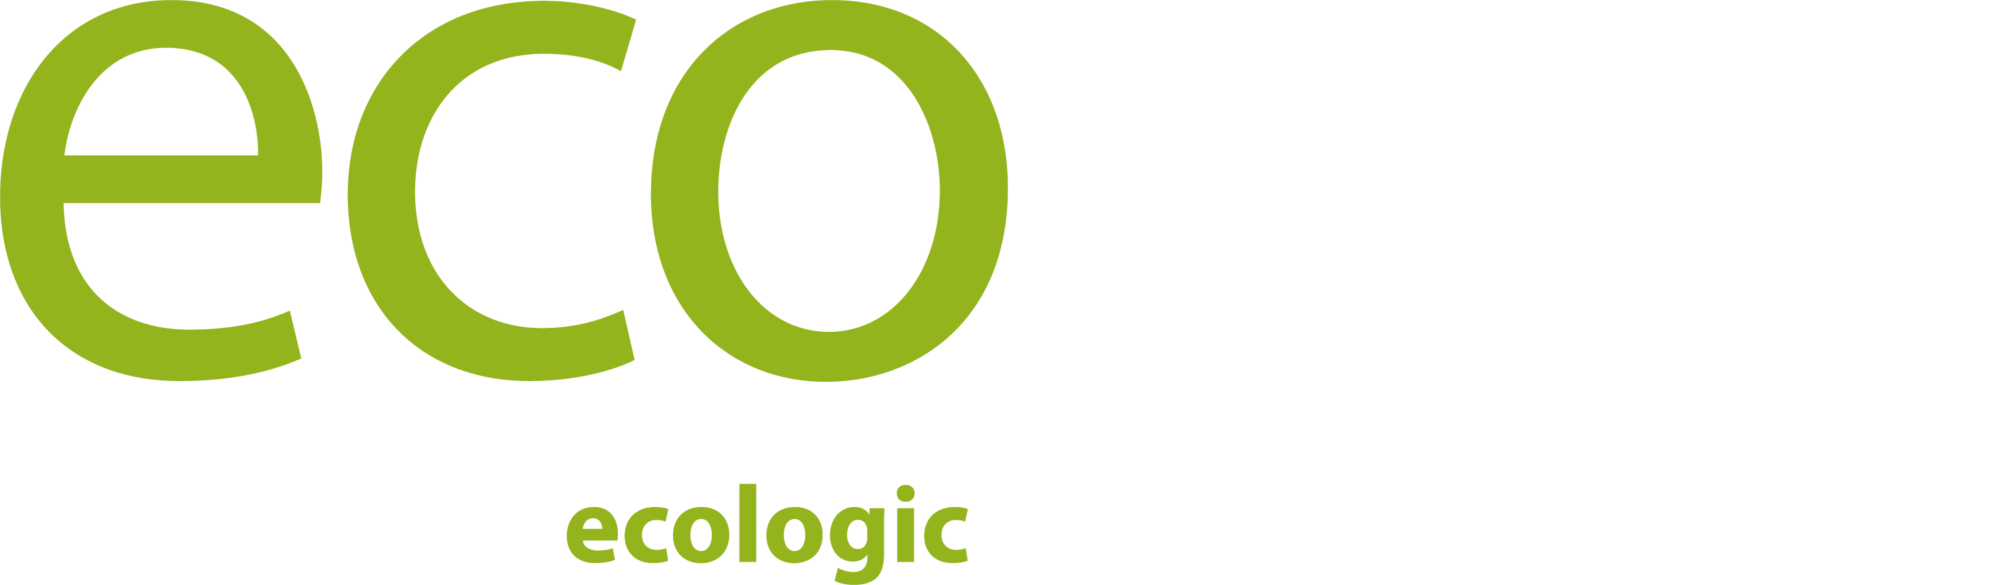 Ecopro_logo_negativ